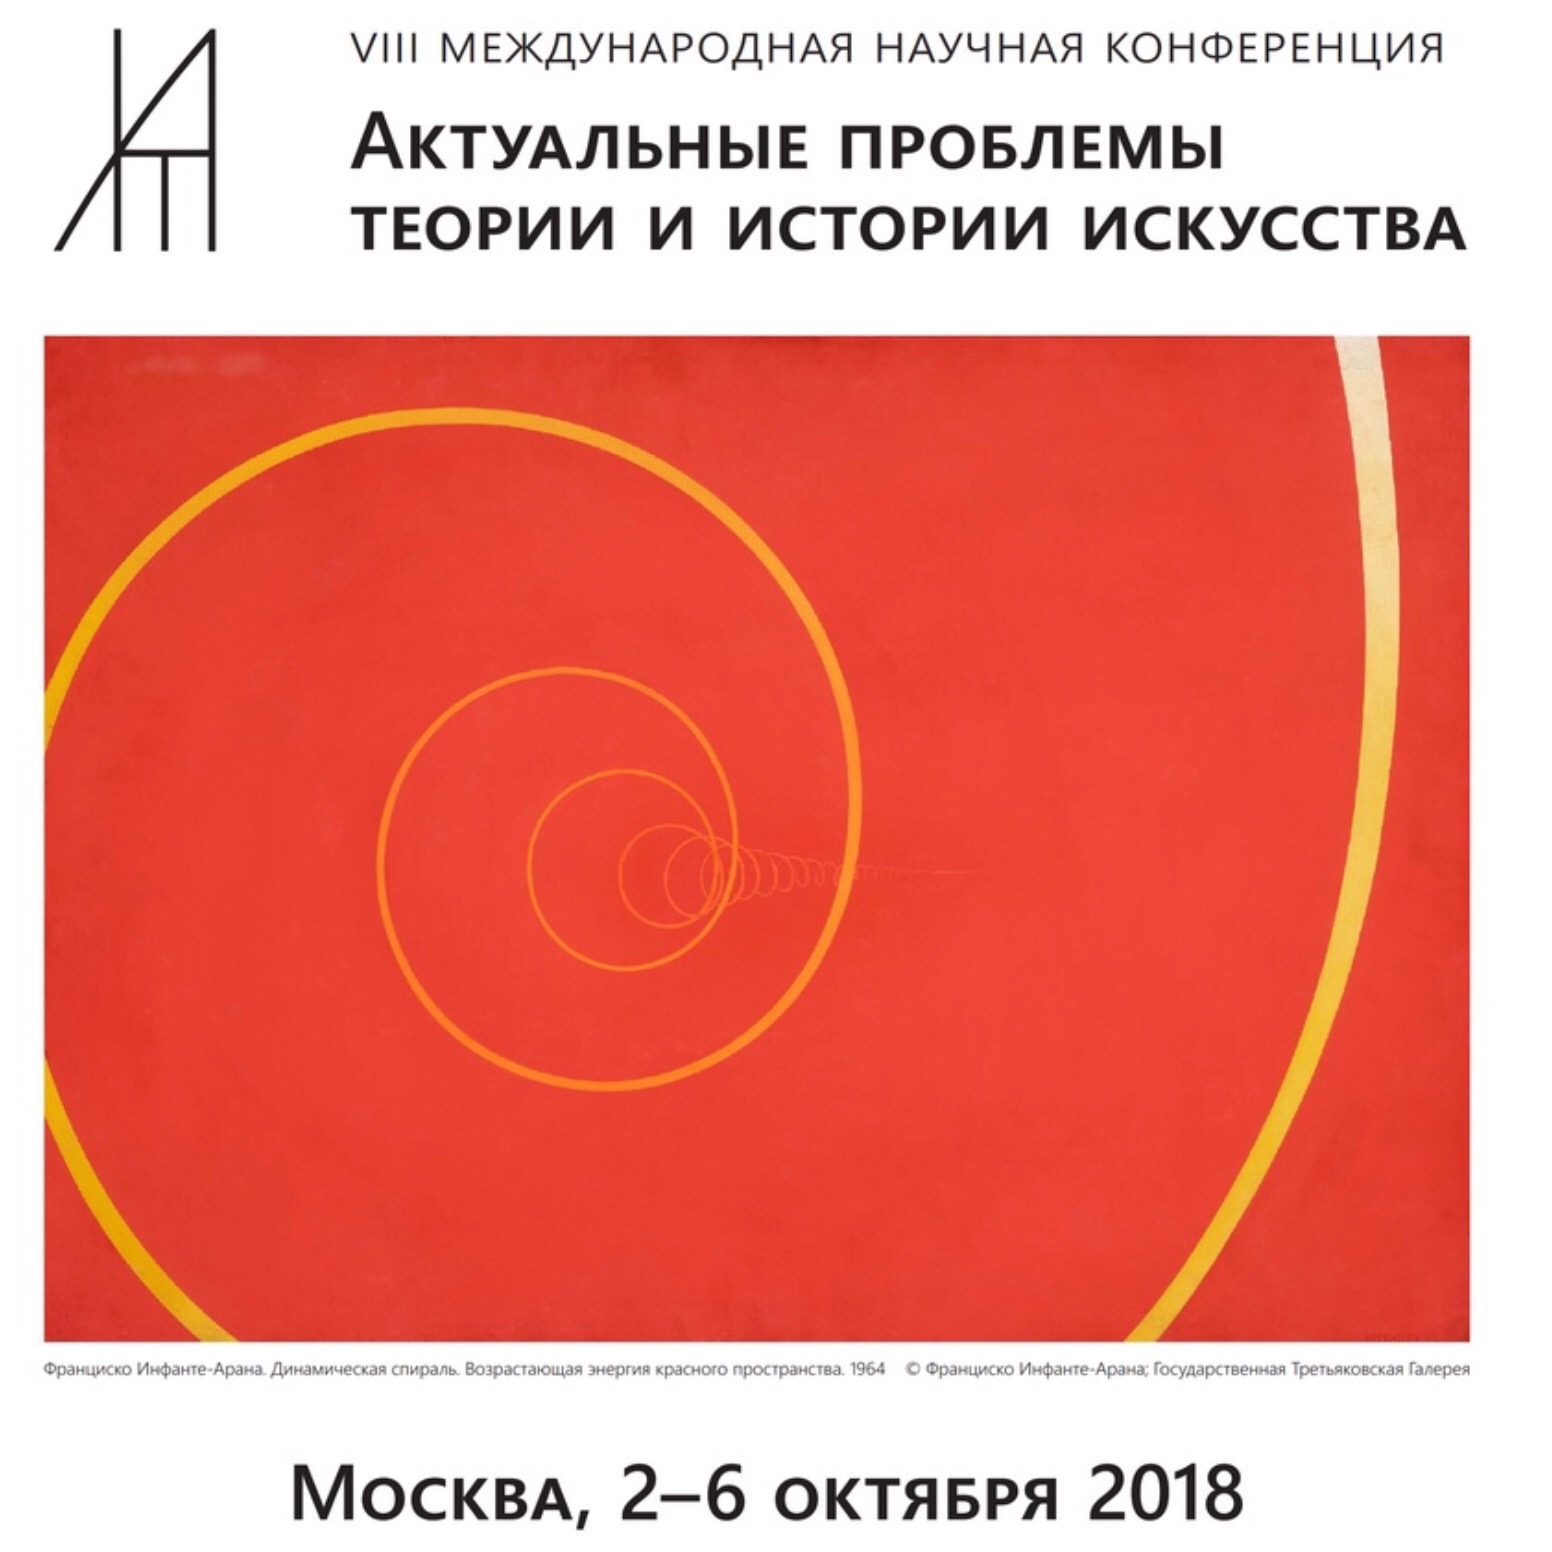 VIII Международная конференция "Актуальные проблемы теории и истории искусства"